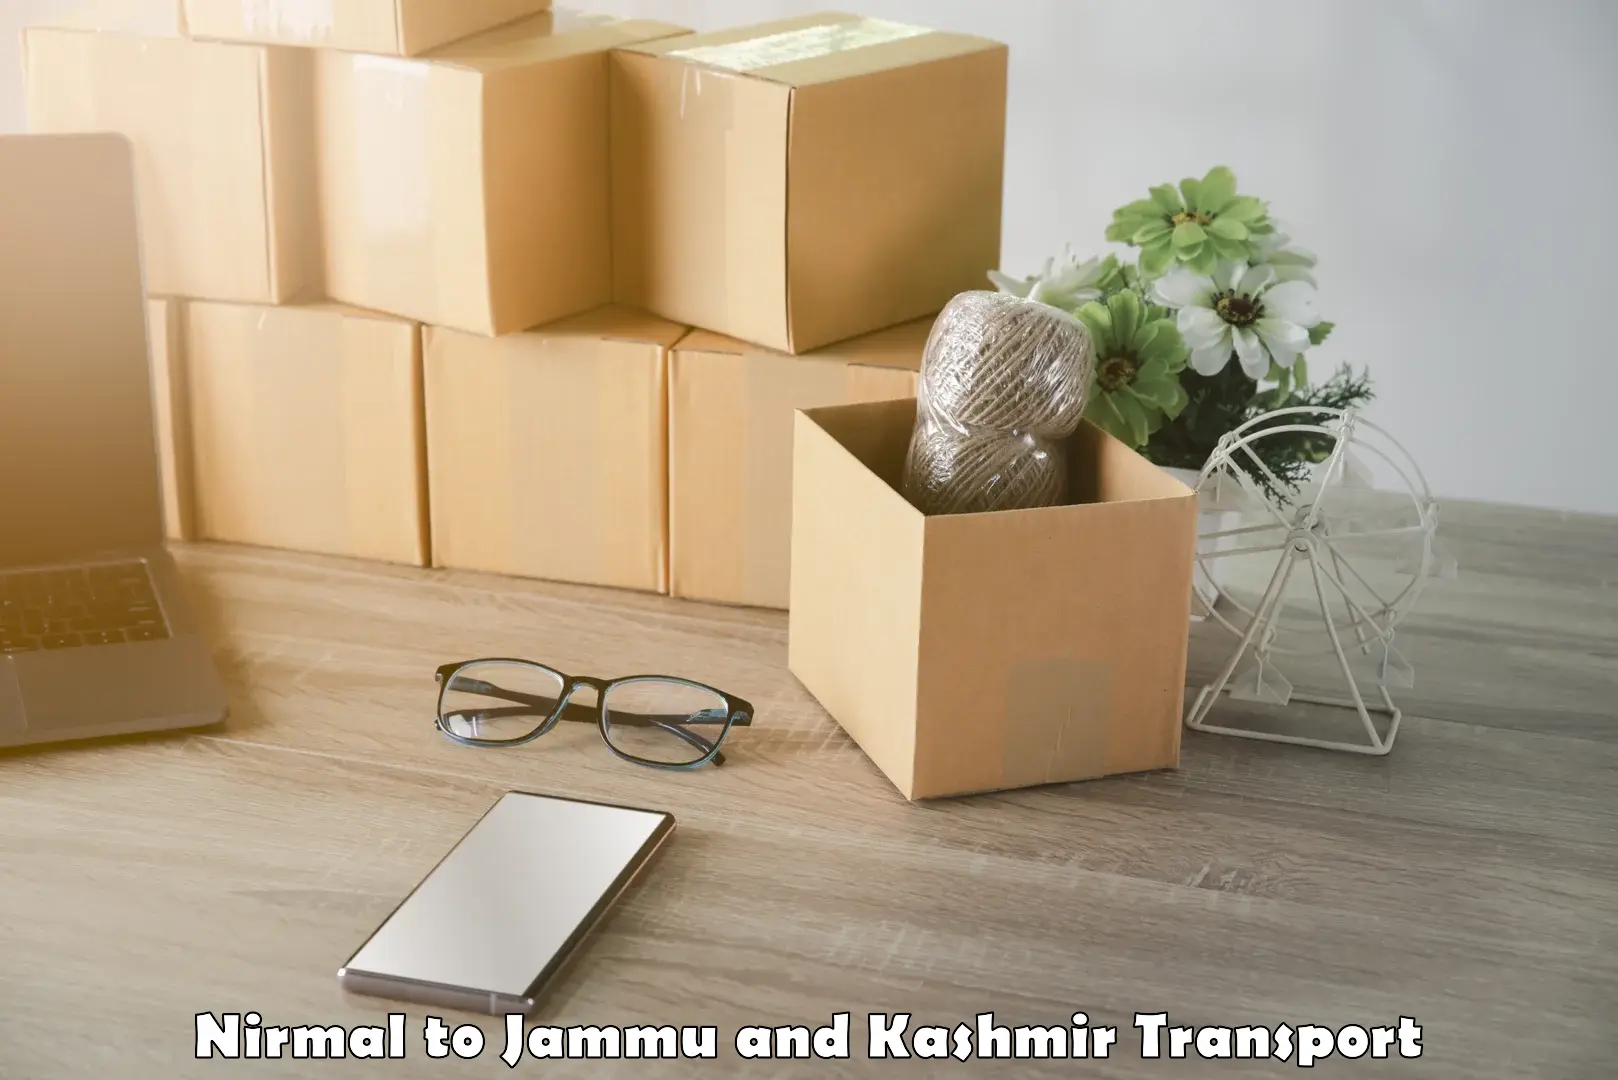 Bike shipping service Nirmal to Jammu and Kashmir